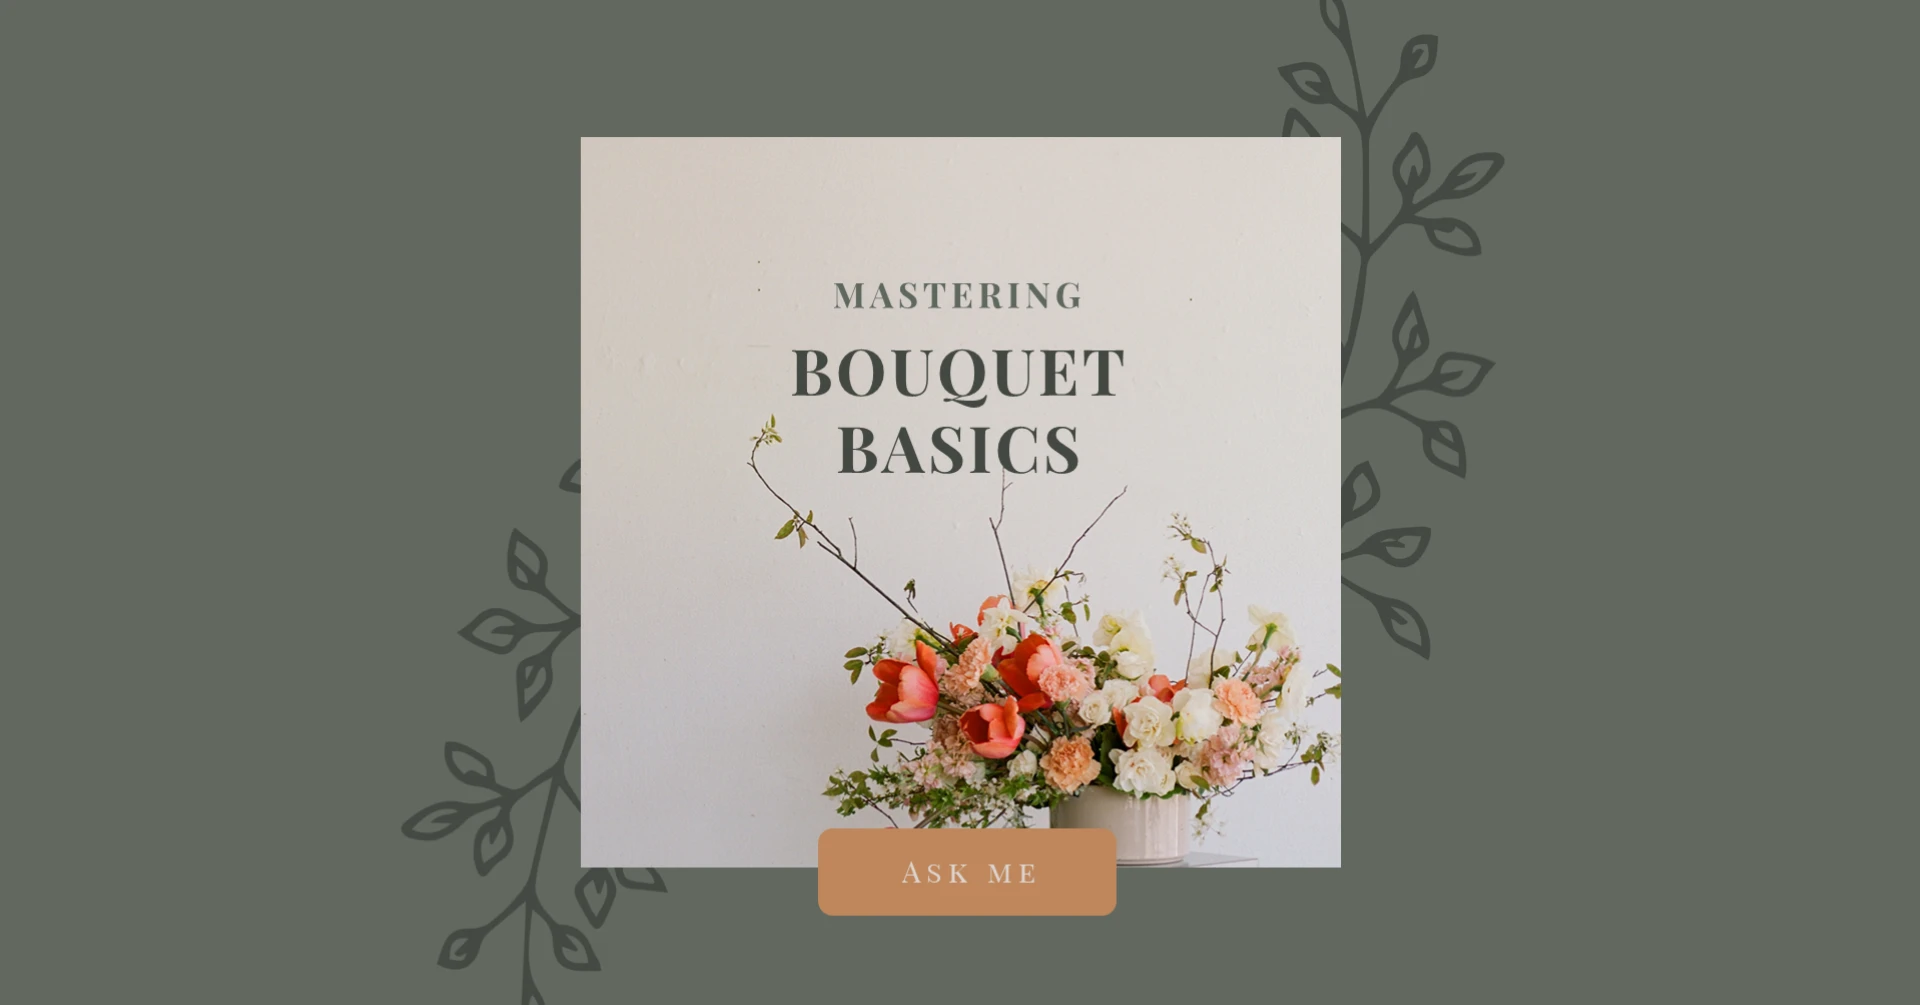 Bouquet basics